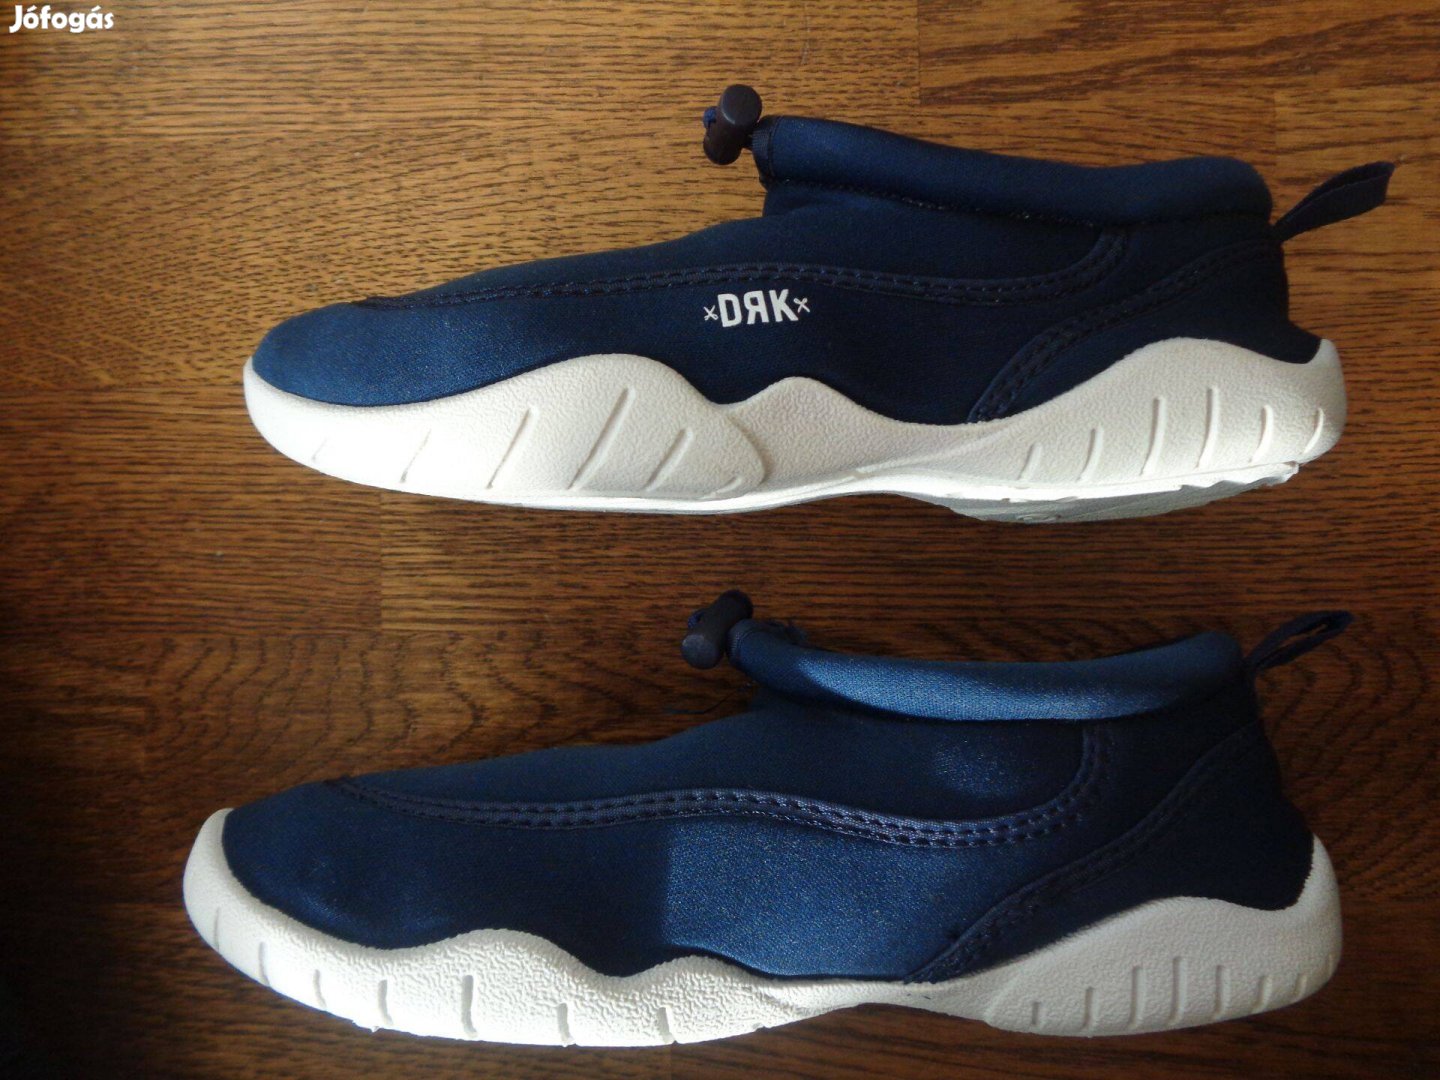 Új eredeti Dorko DRK Aquatic 30-as 30 gyerekcipő utcai cipő 2 színben